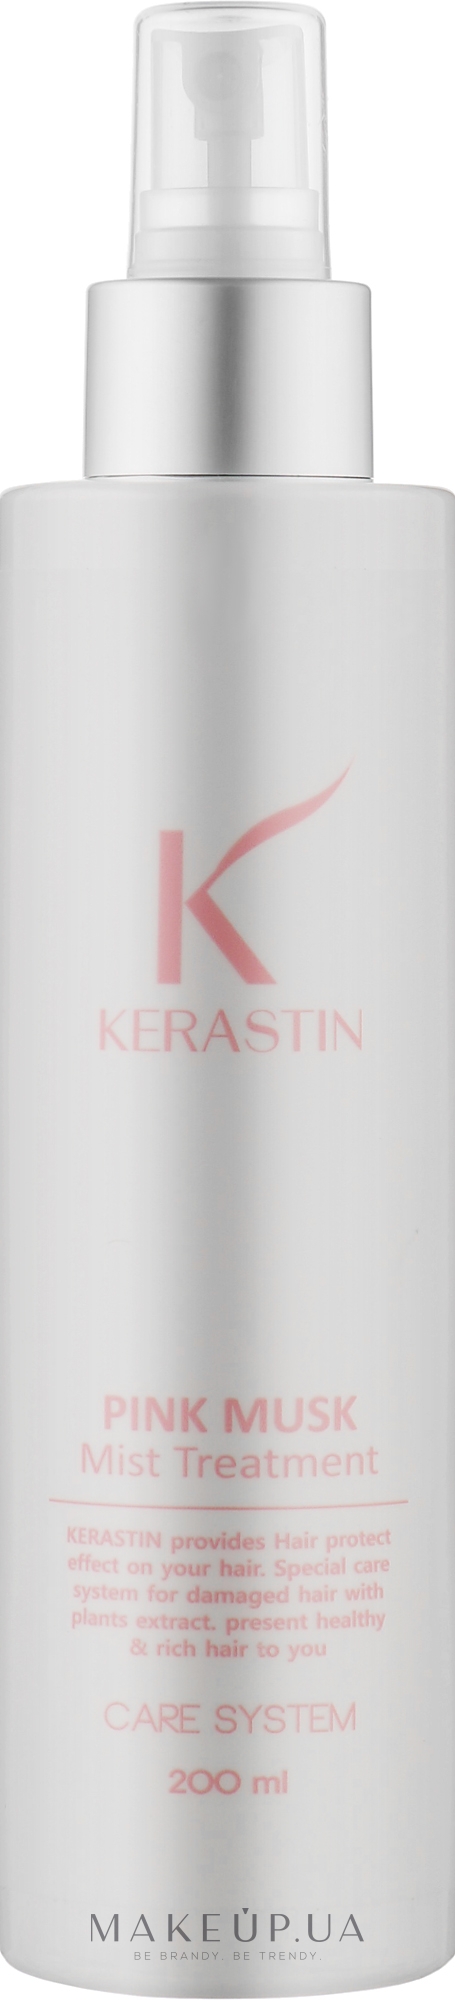 Восстанавливающая маска-мист для волос - PL Kerastin Pink Musk Mist Hair Treatment — фото 200ml